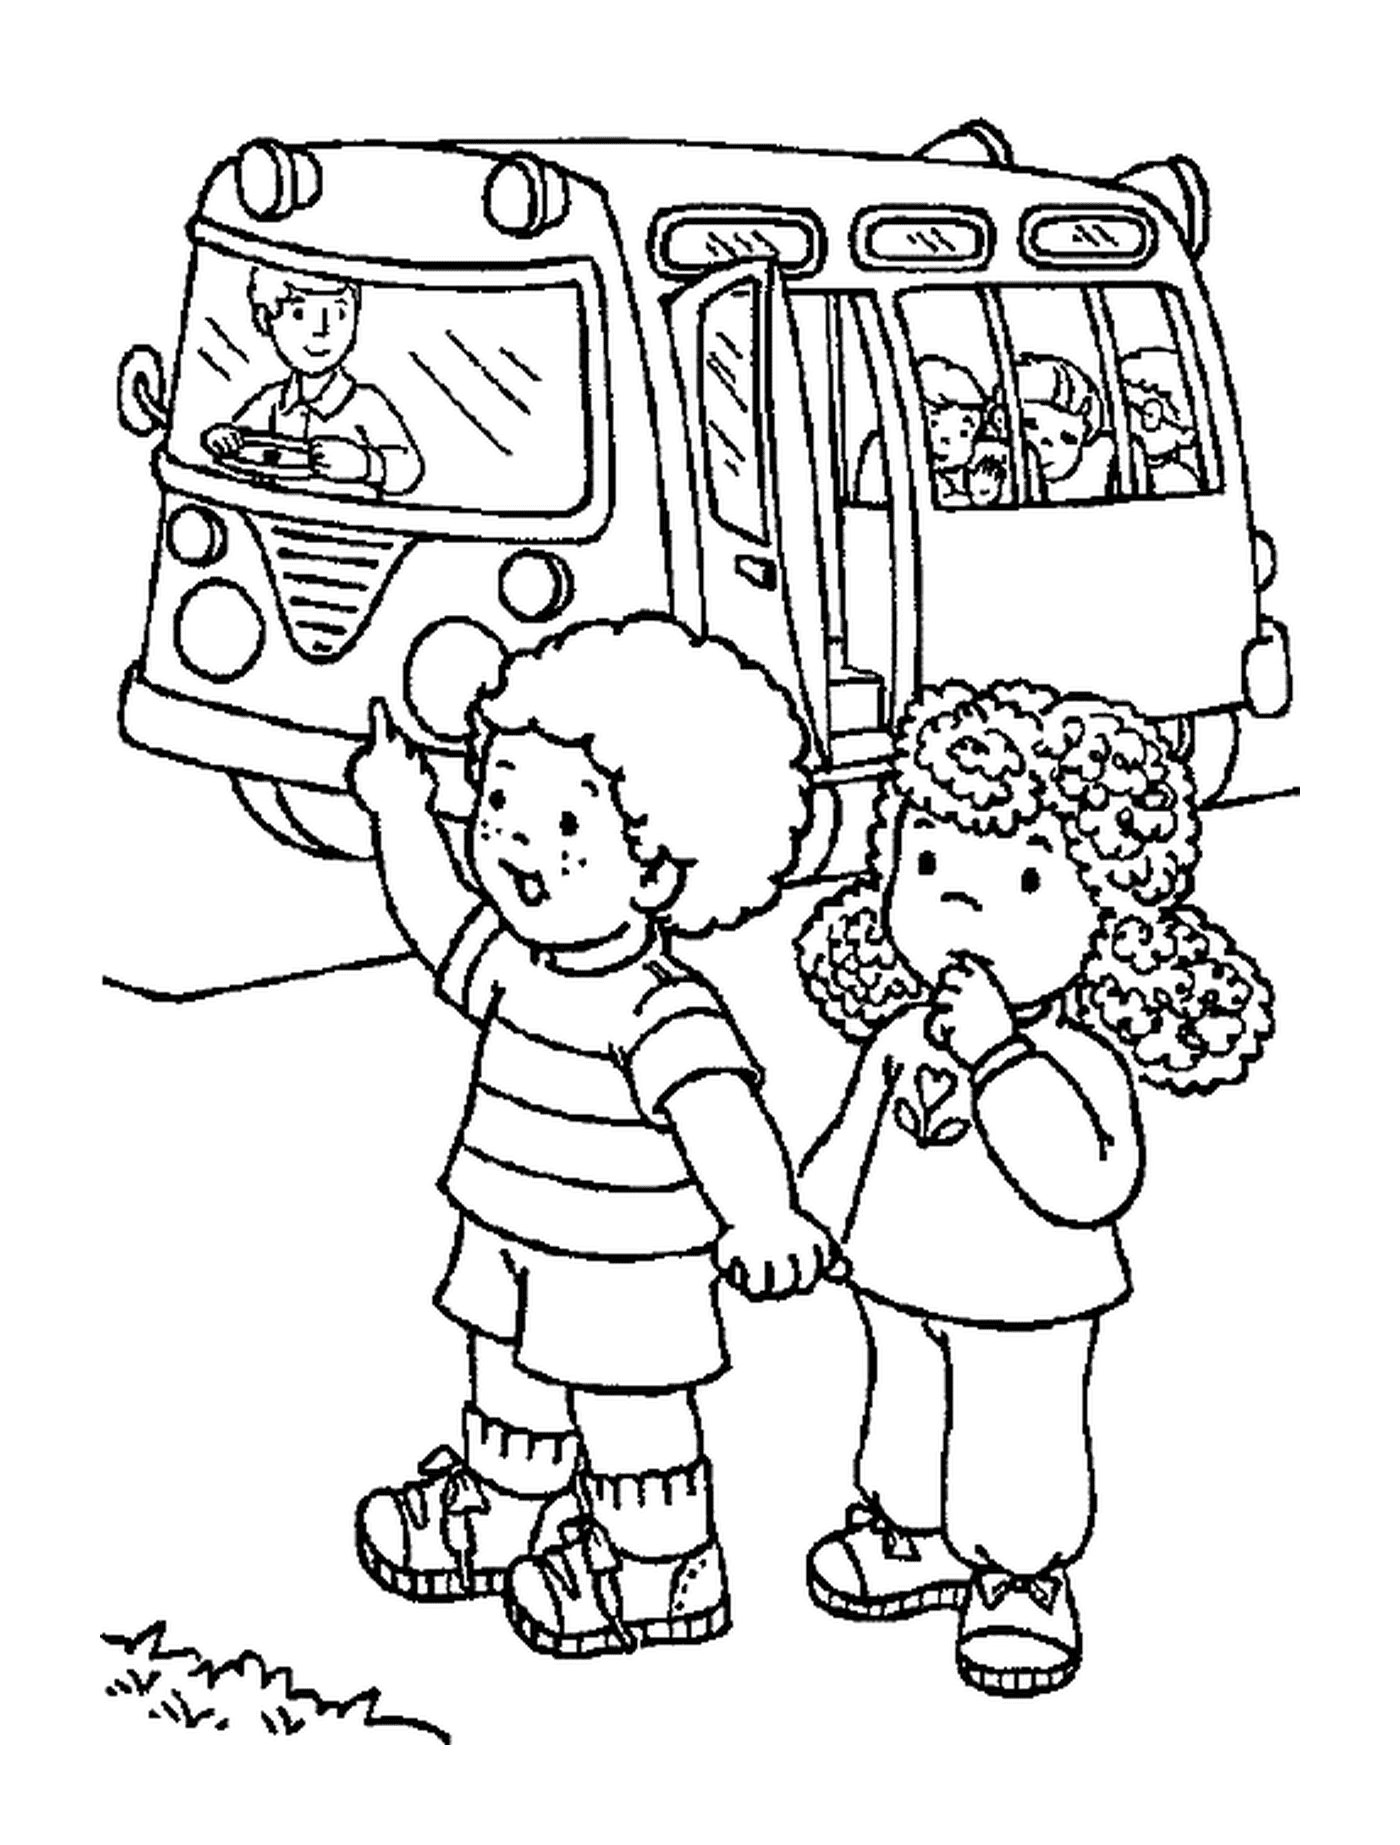  Zwei Kinder kommen mit dem Schulbus von der Schule zurück 